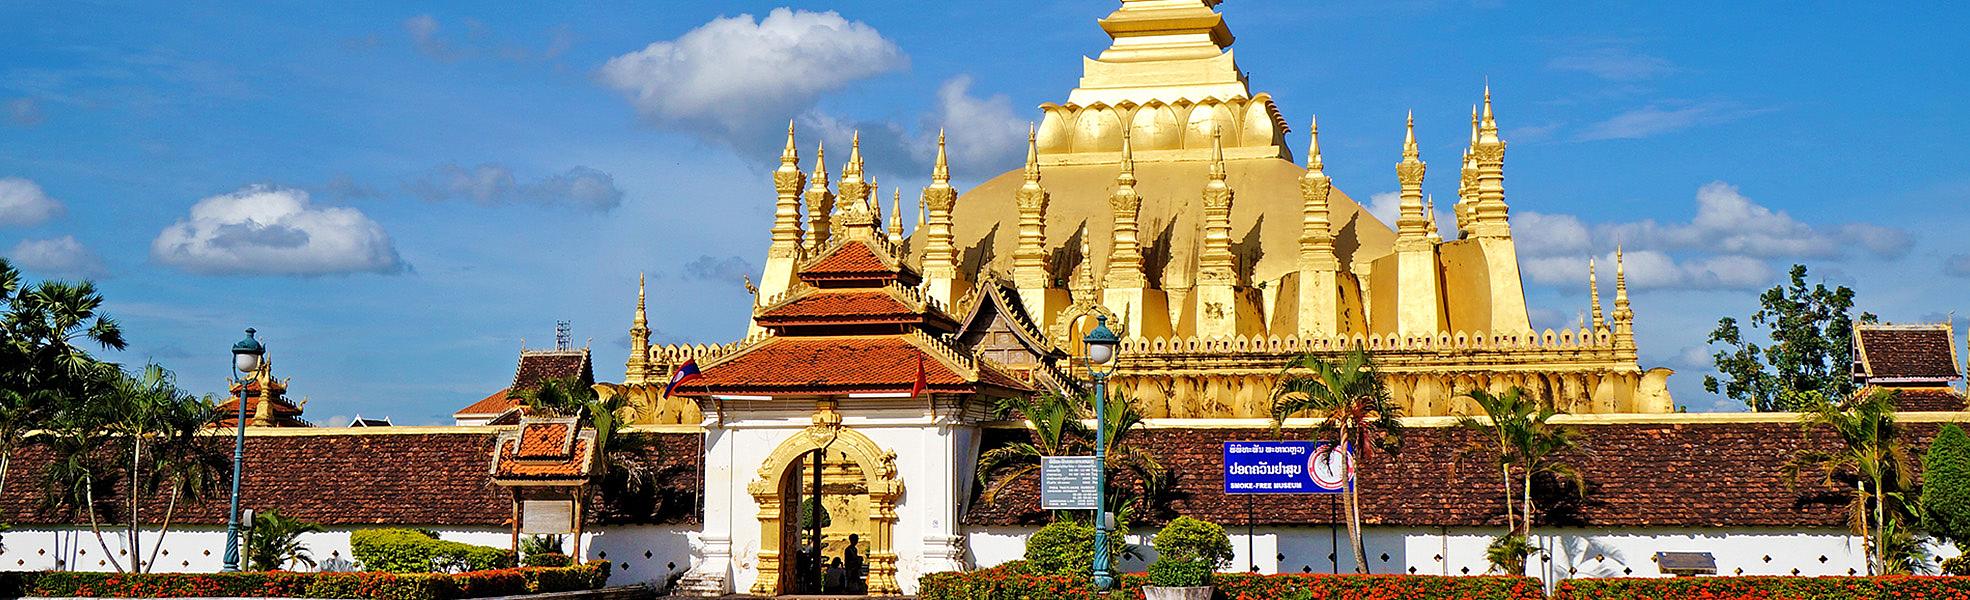 Laos Impression: Vientiane & Luang Prabang